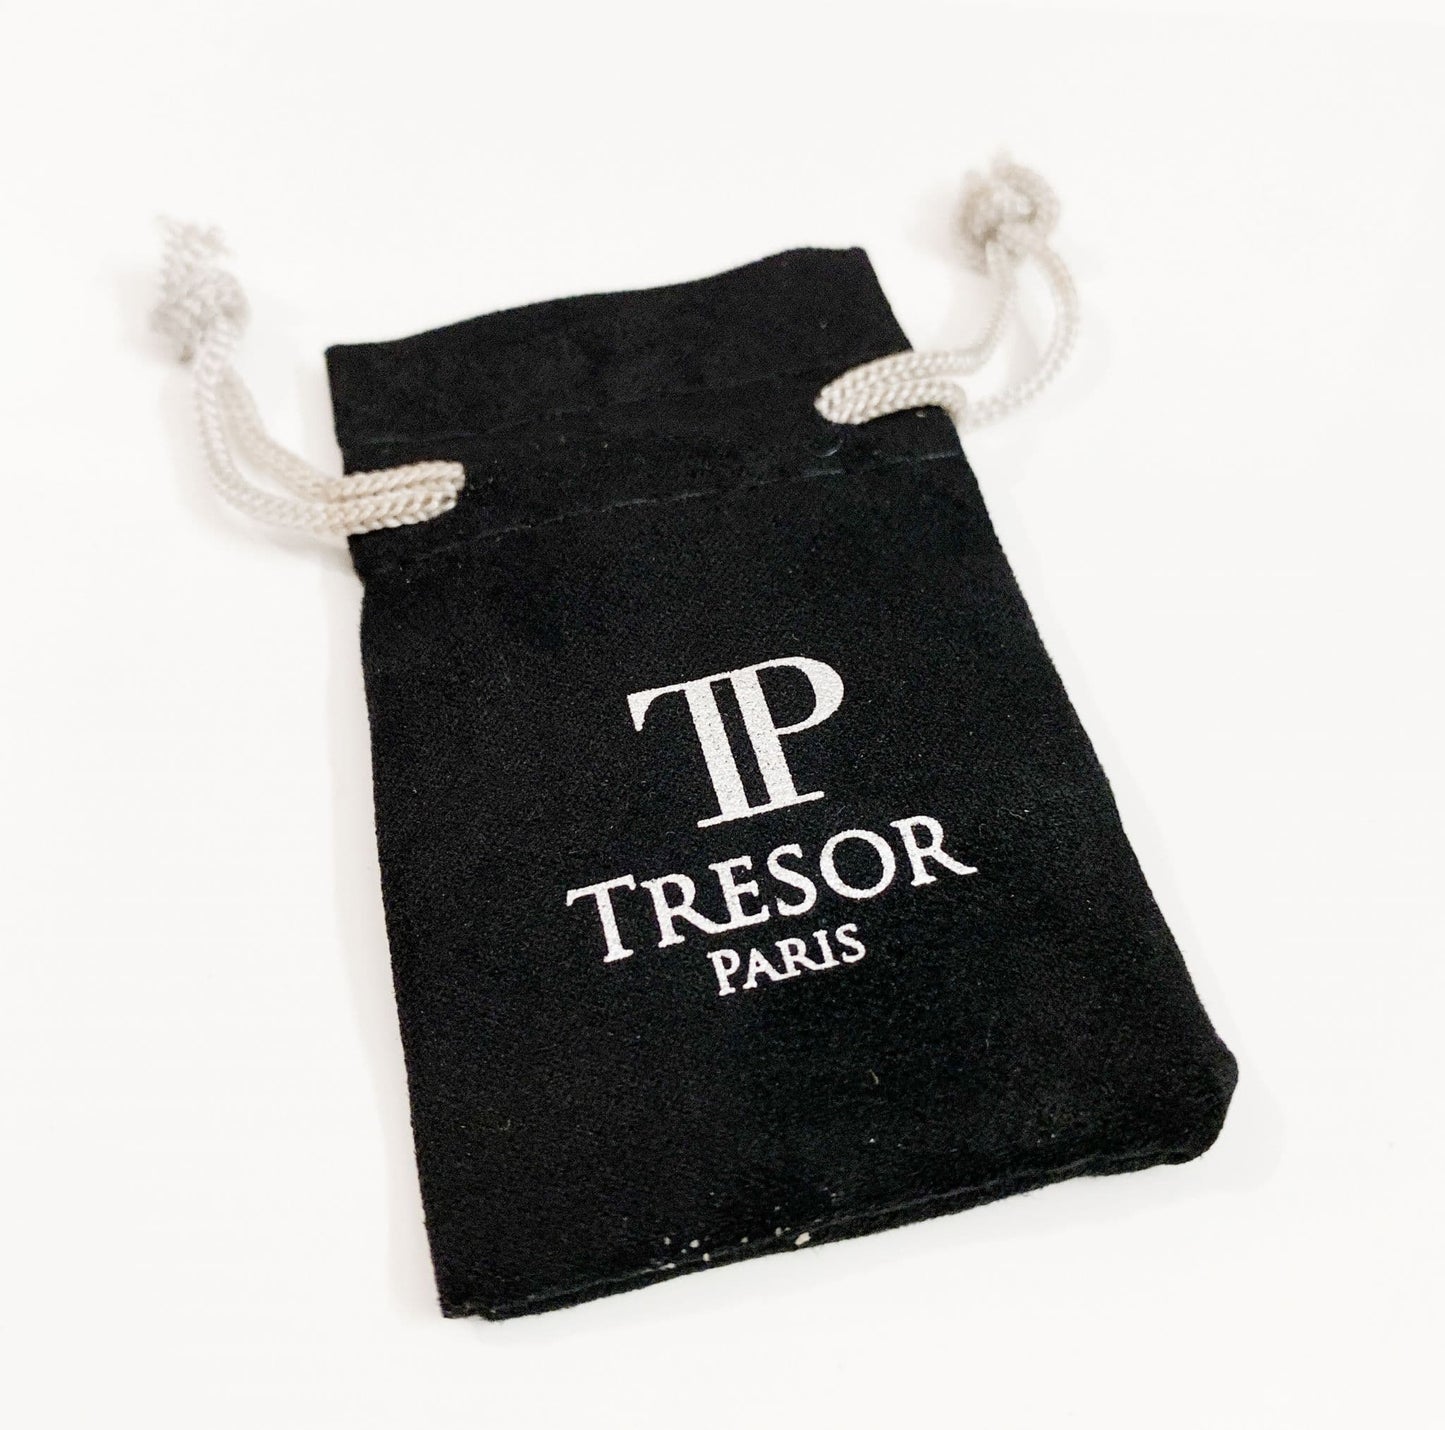 Tresor Paris earrings stud heart shaped 10 mm lilac titanium